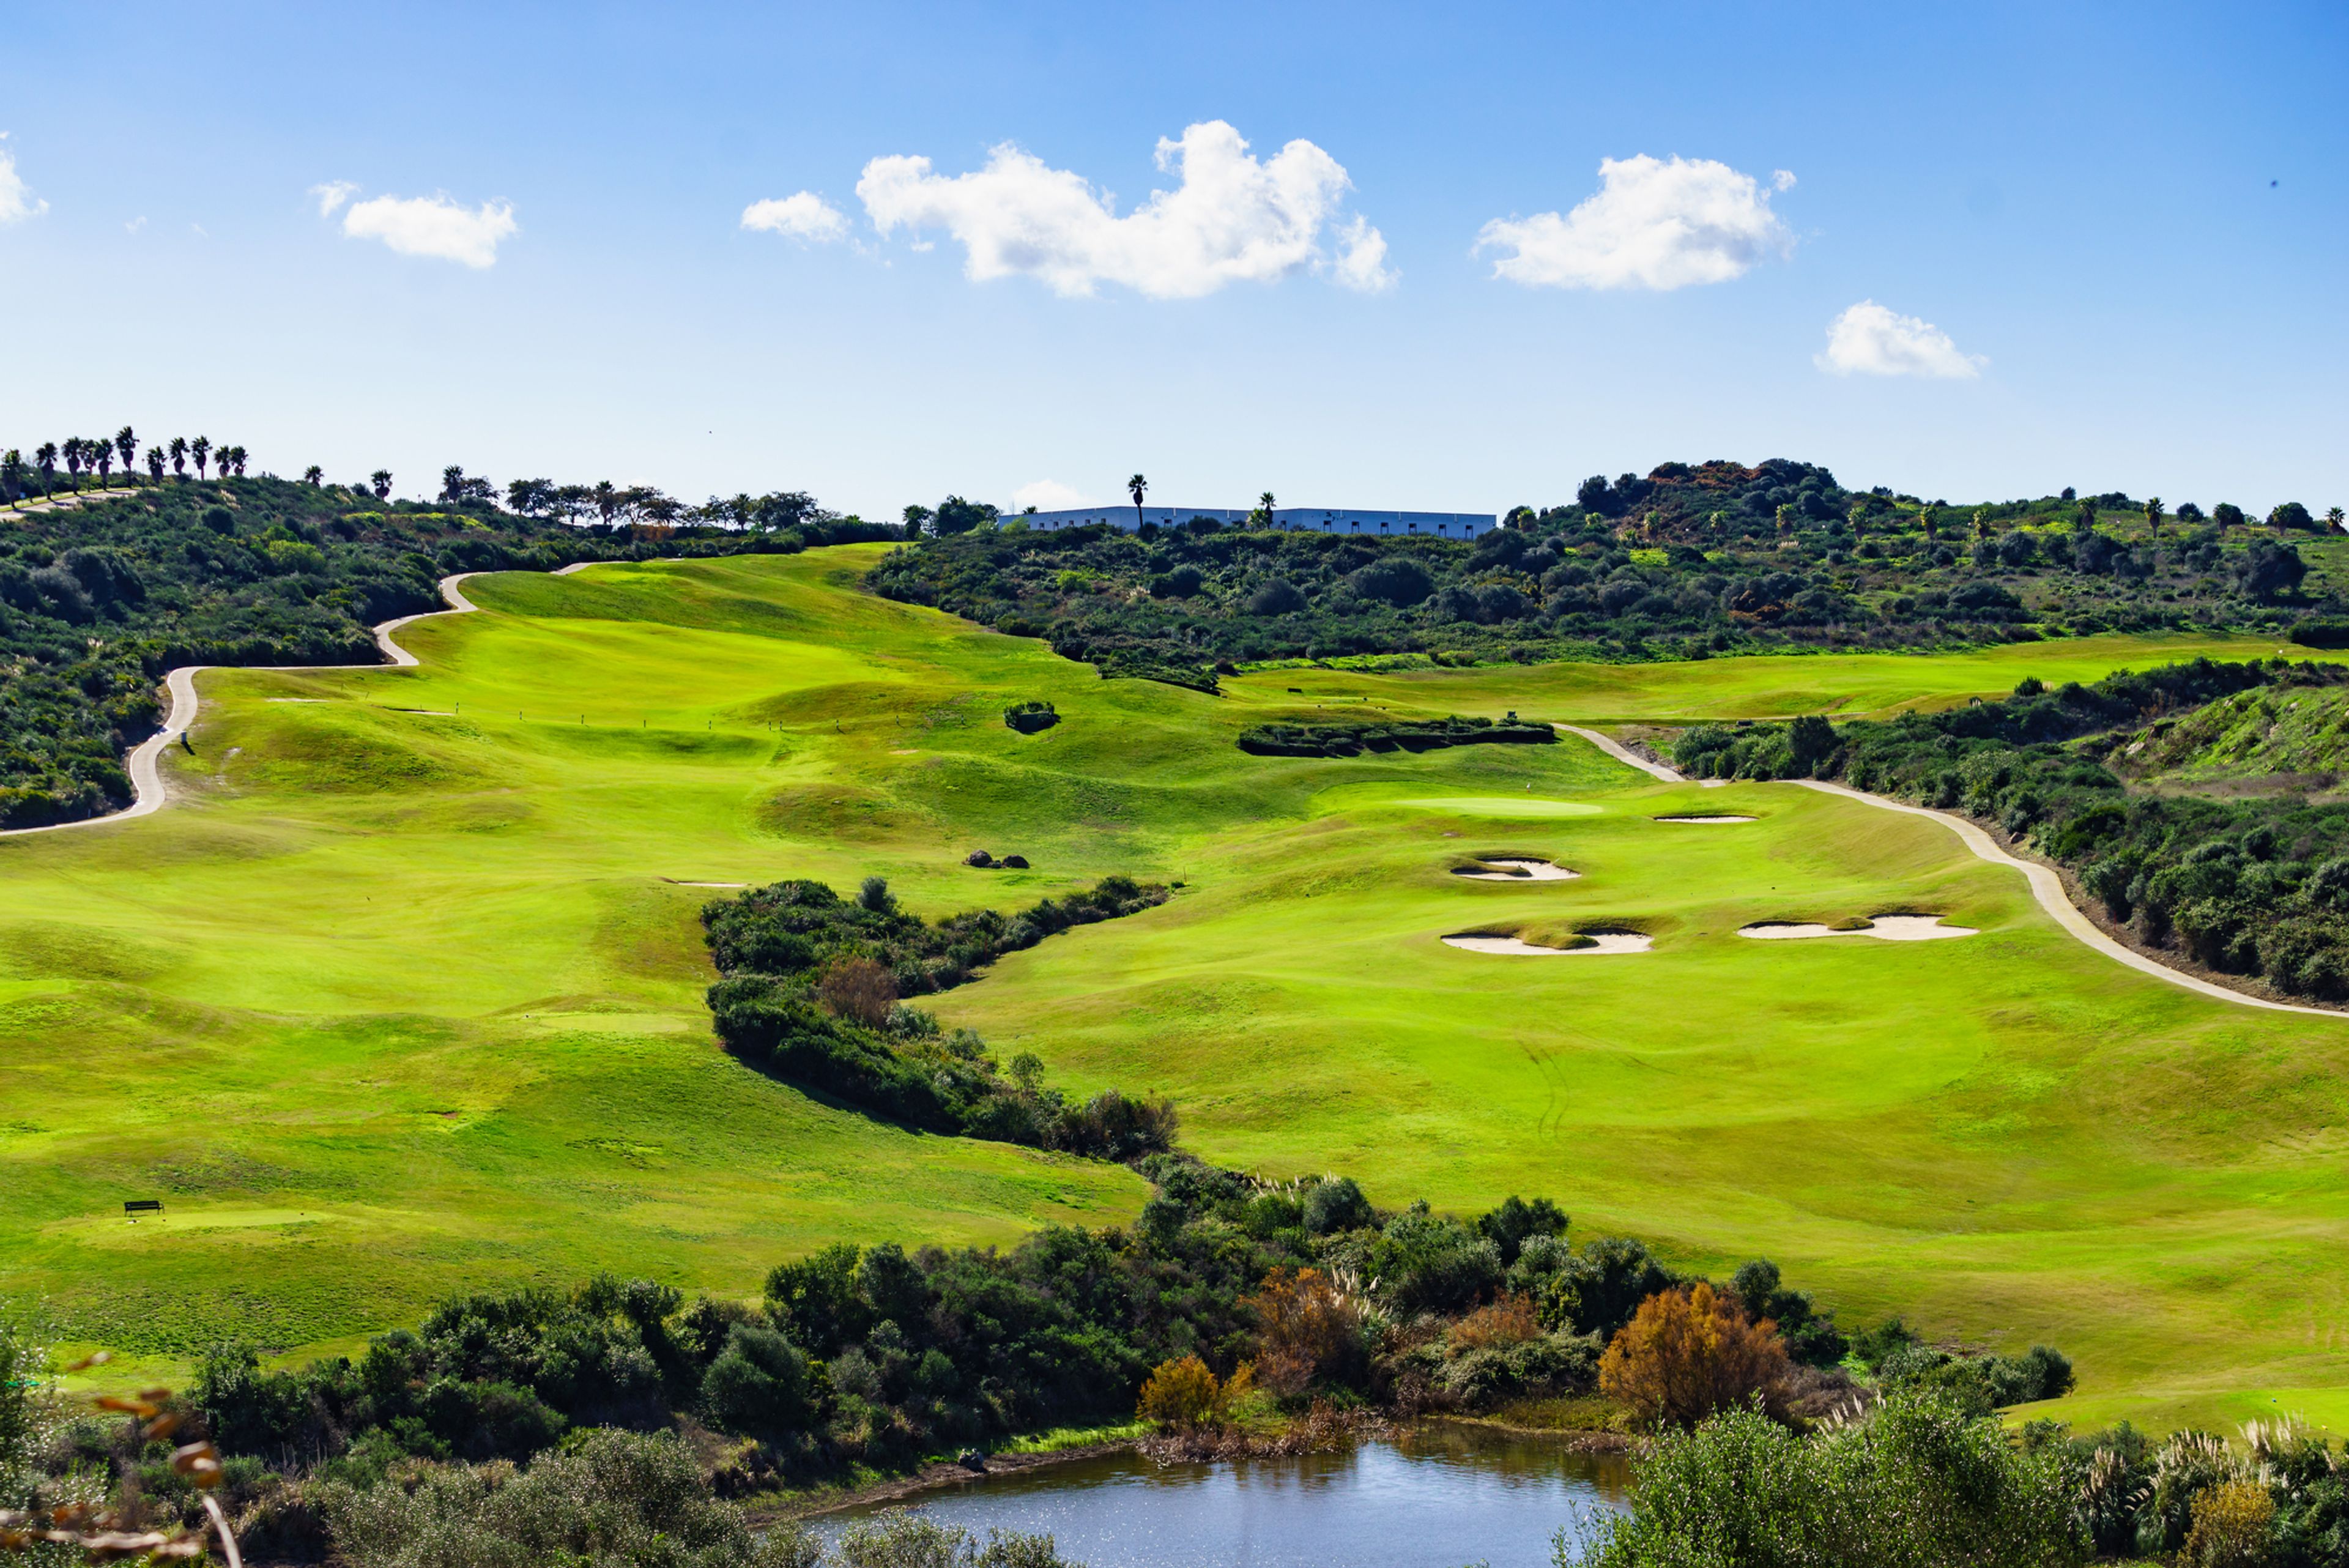 Vybrat si můžete z velkého množství golfových hřišť.